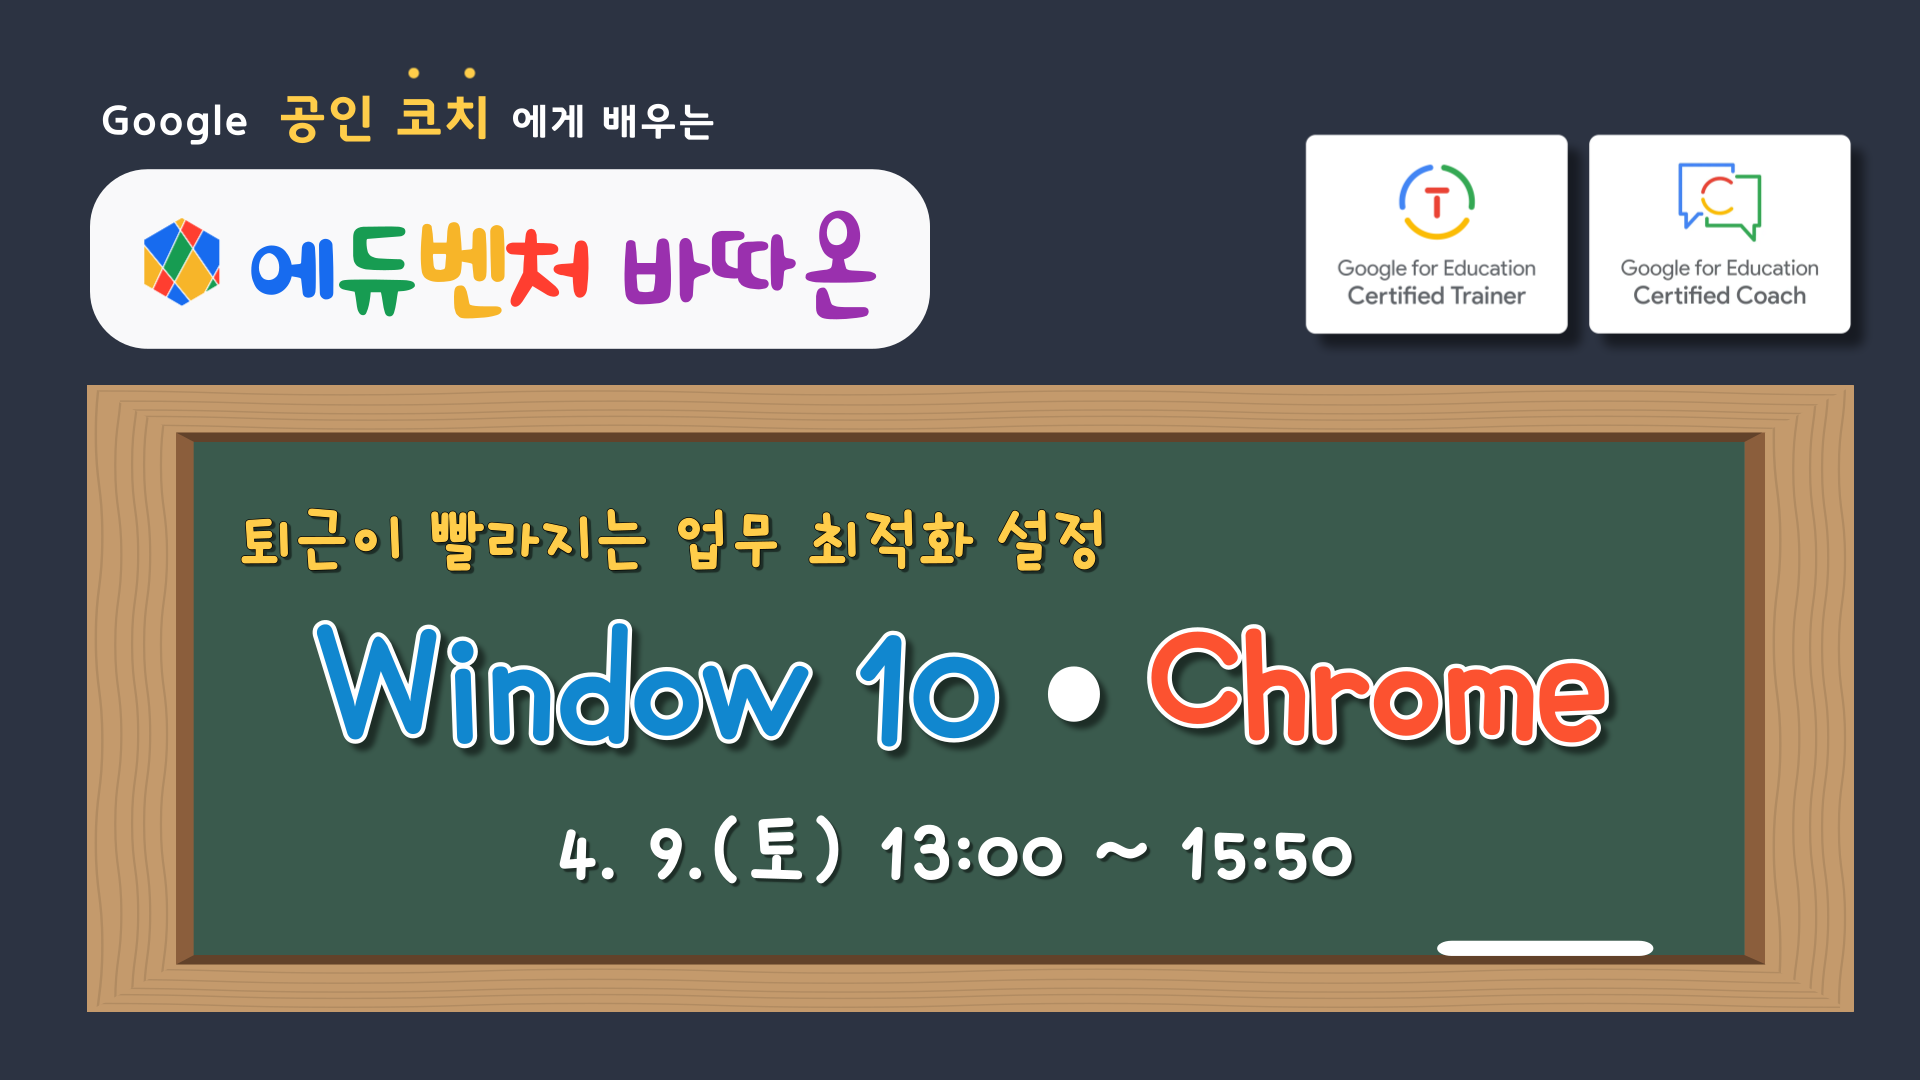 퇴근이 빨라지는 업무 최적화 설정 'Window 10 • Chrome'